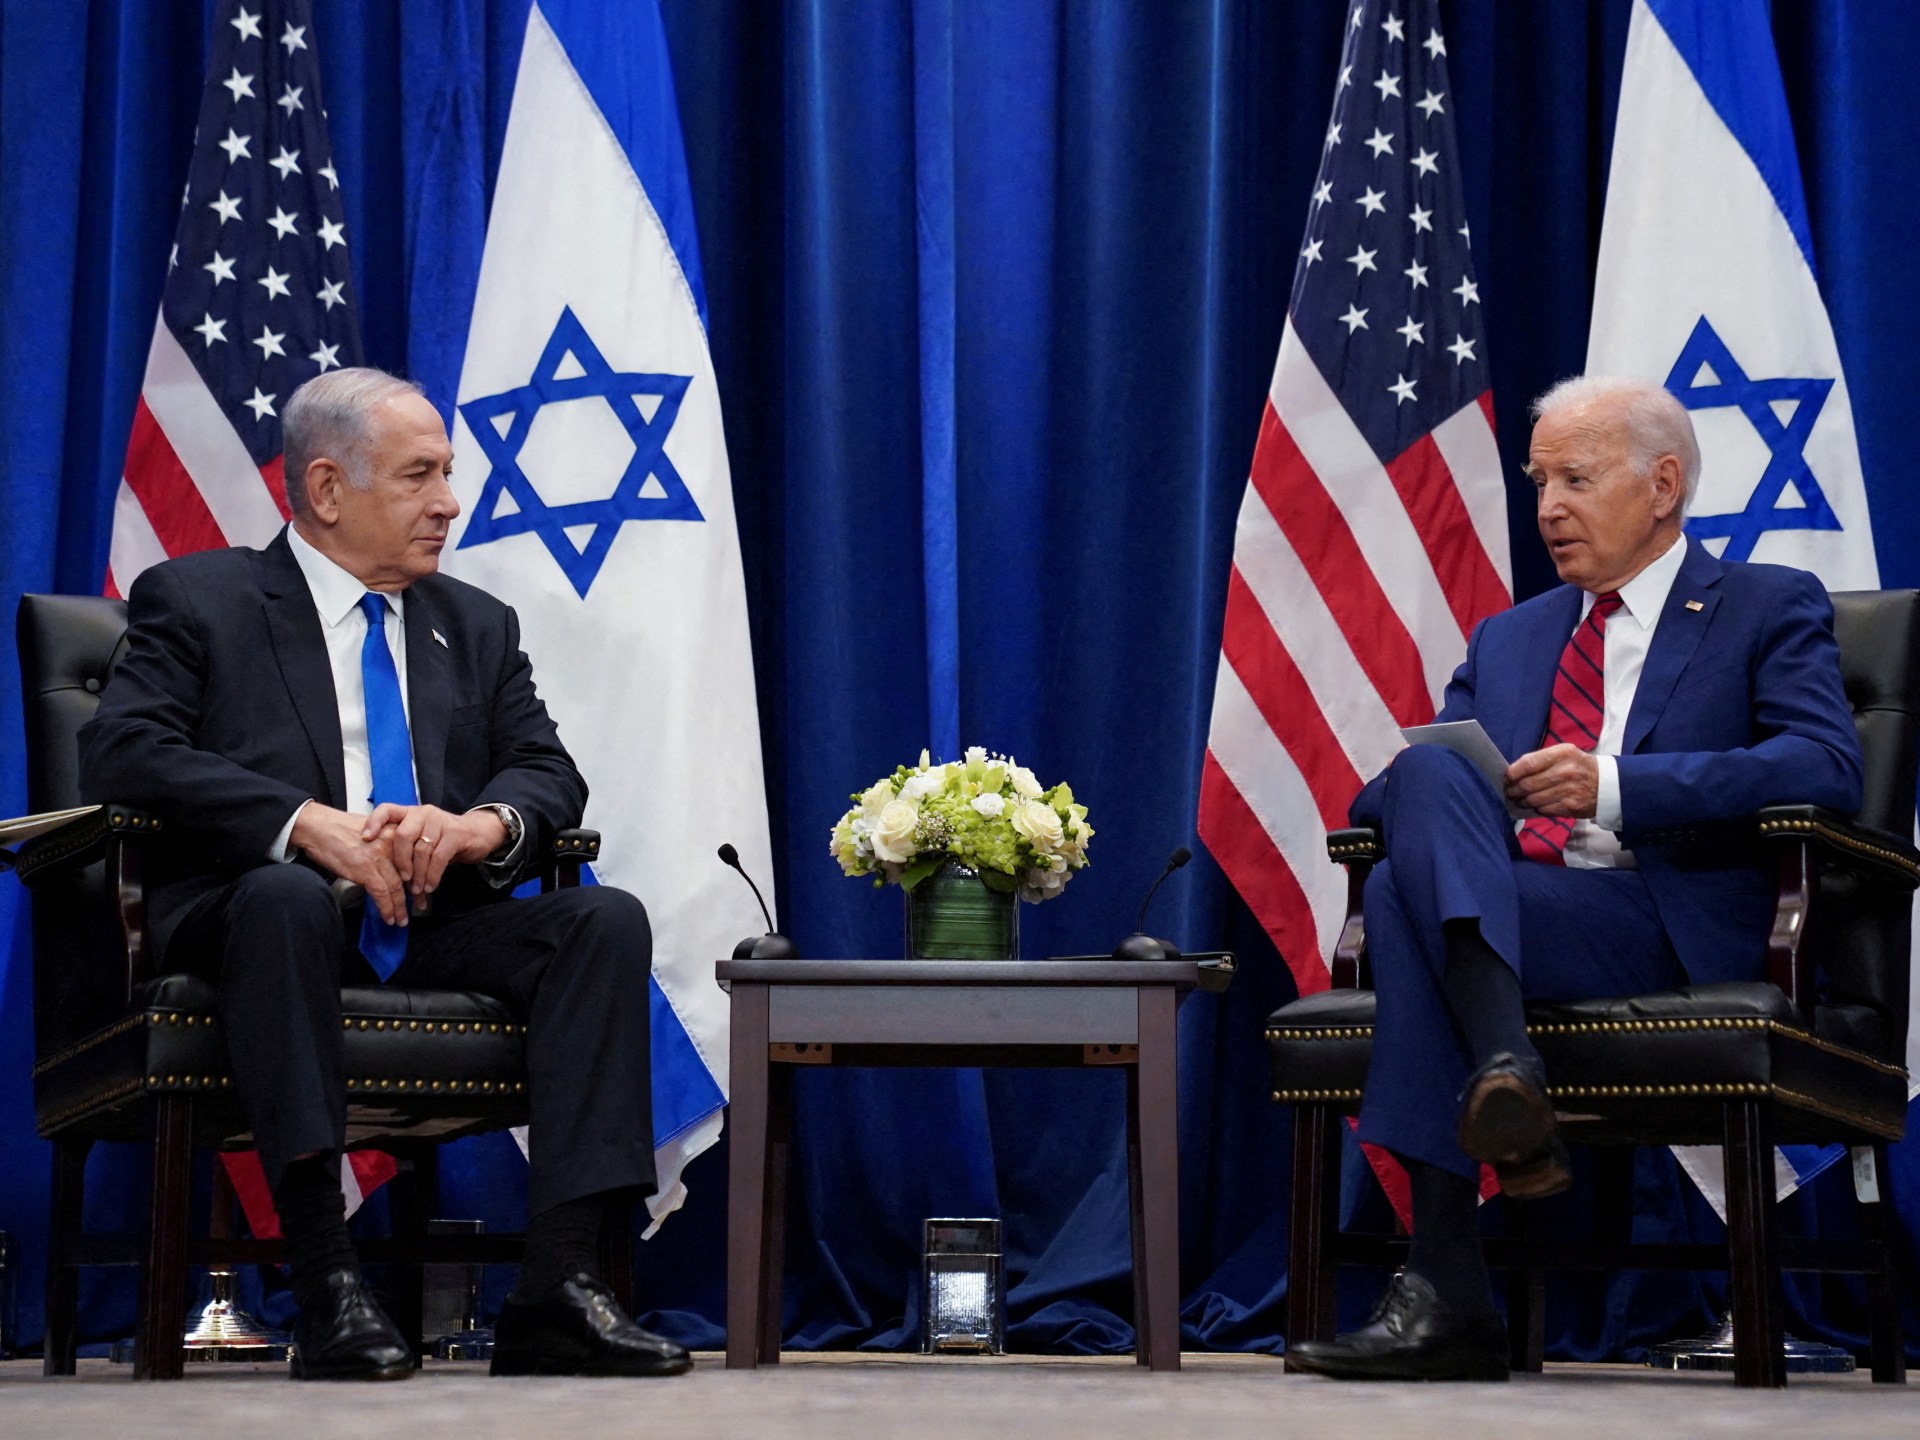 Biden weighs Israel visit after Netanyahu extends invite amid Gaza war